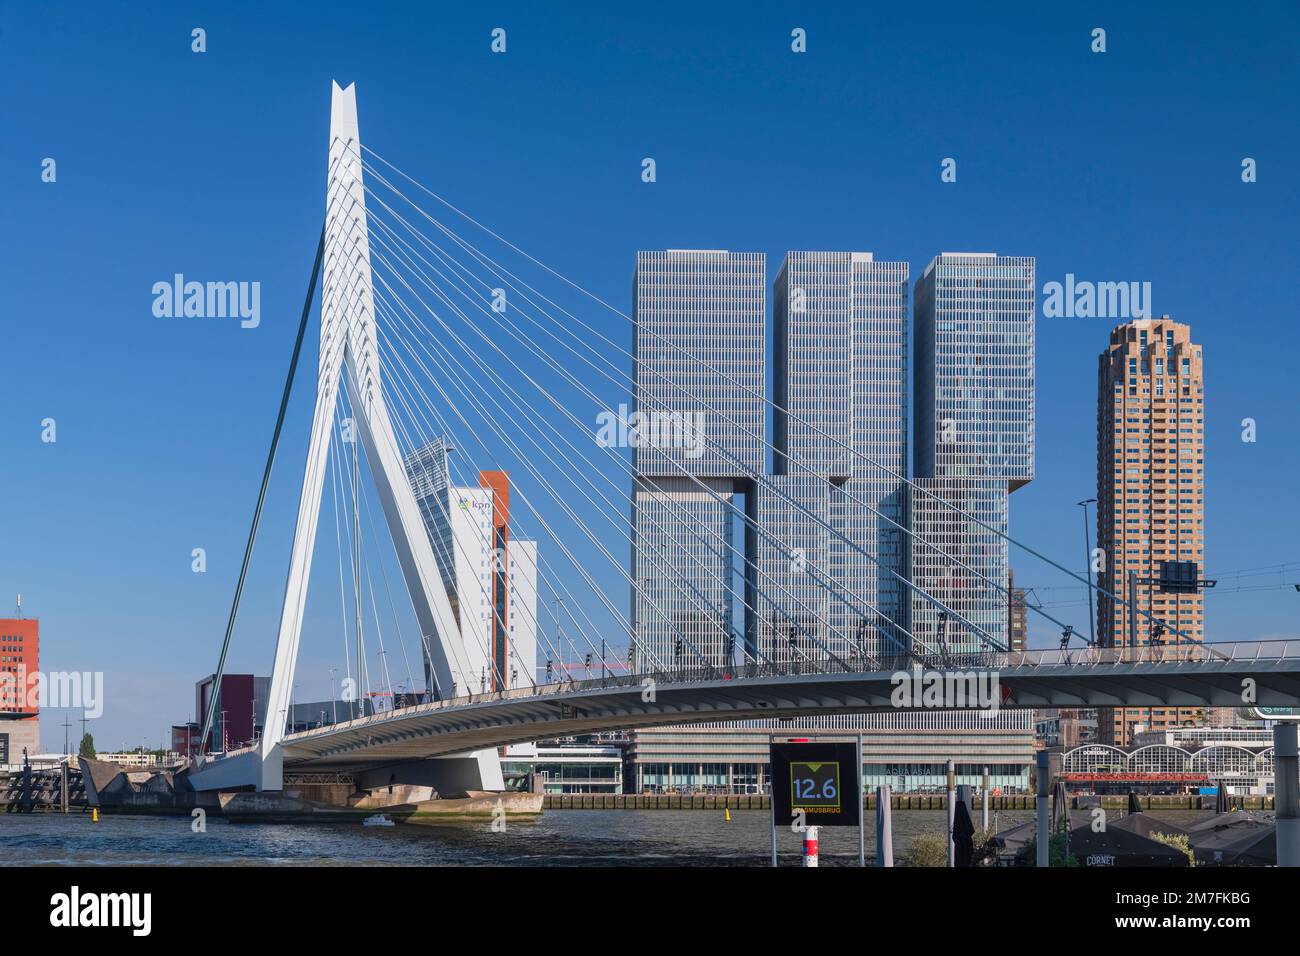 Olanda, Rotterdam, Vista dell'Erasmusbrug o del Ponte Erasmus sul Fiume Nieuwe Maas con il 3 sezionato edificio De Rotterdam sullo sfondo. Foto Stock